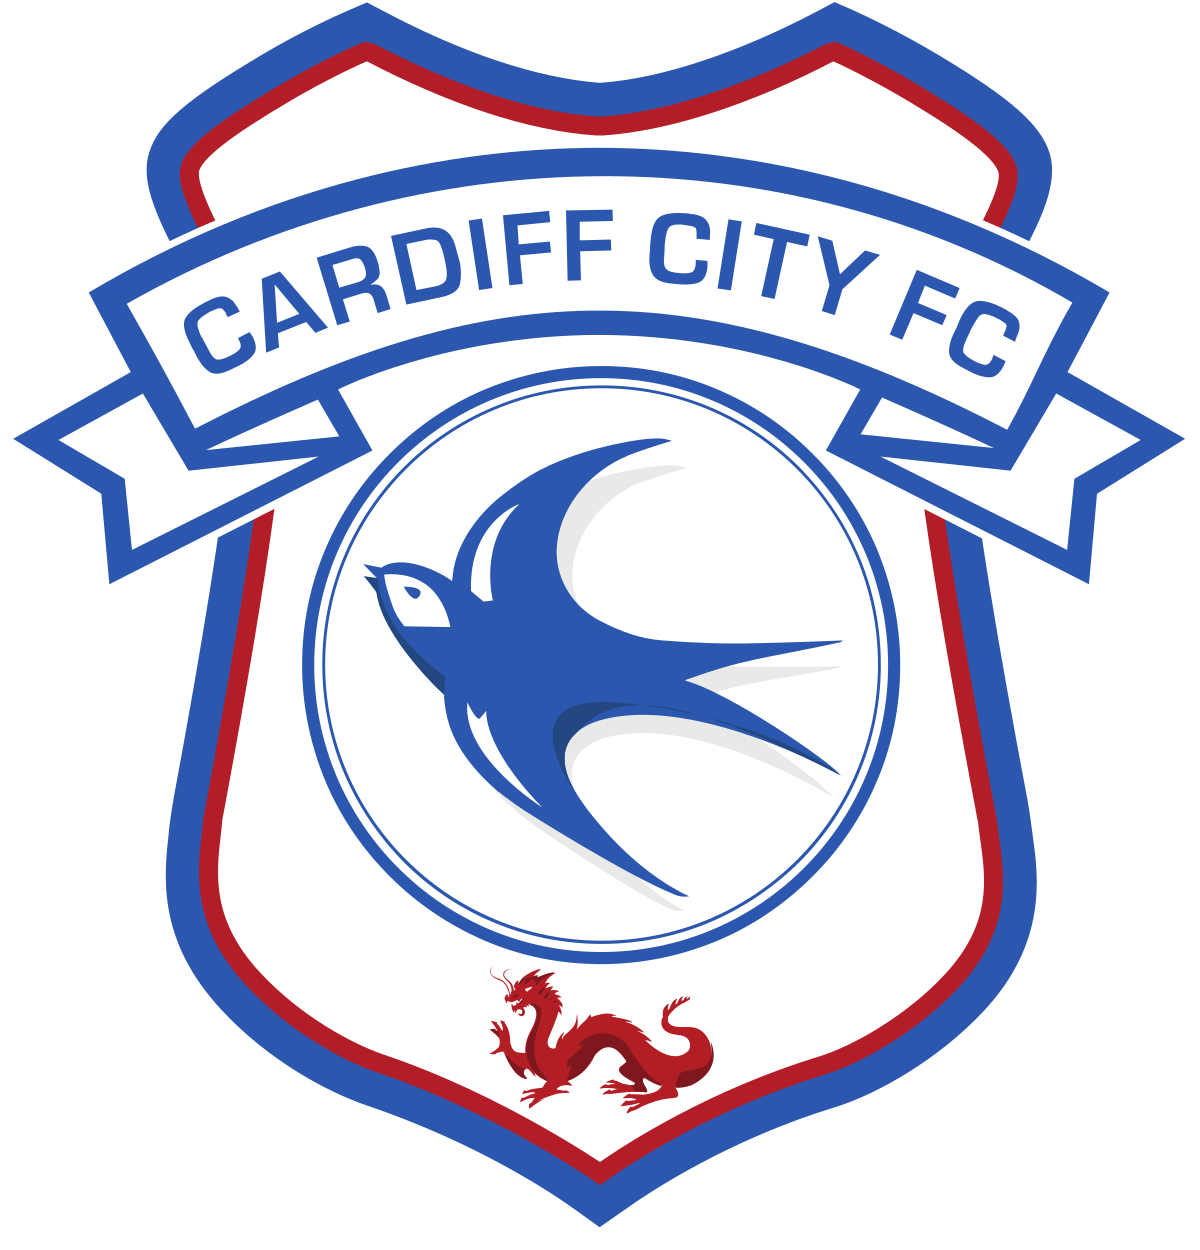 Image Transparente de Cardiff City F